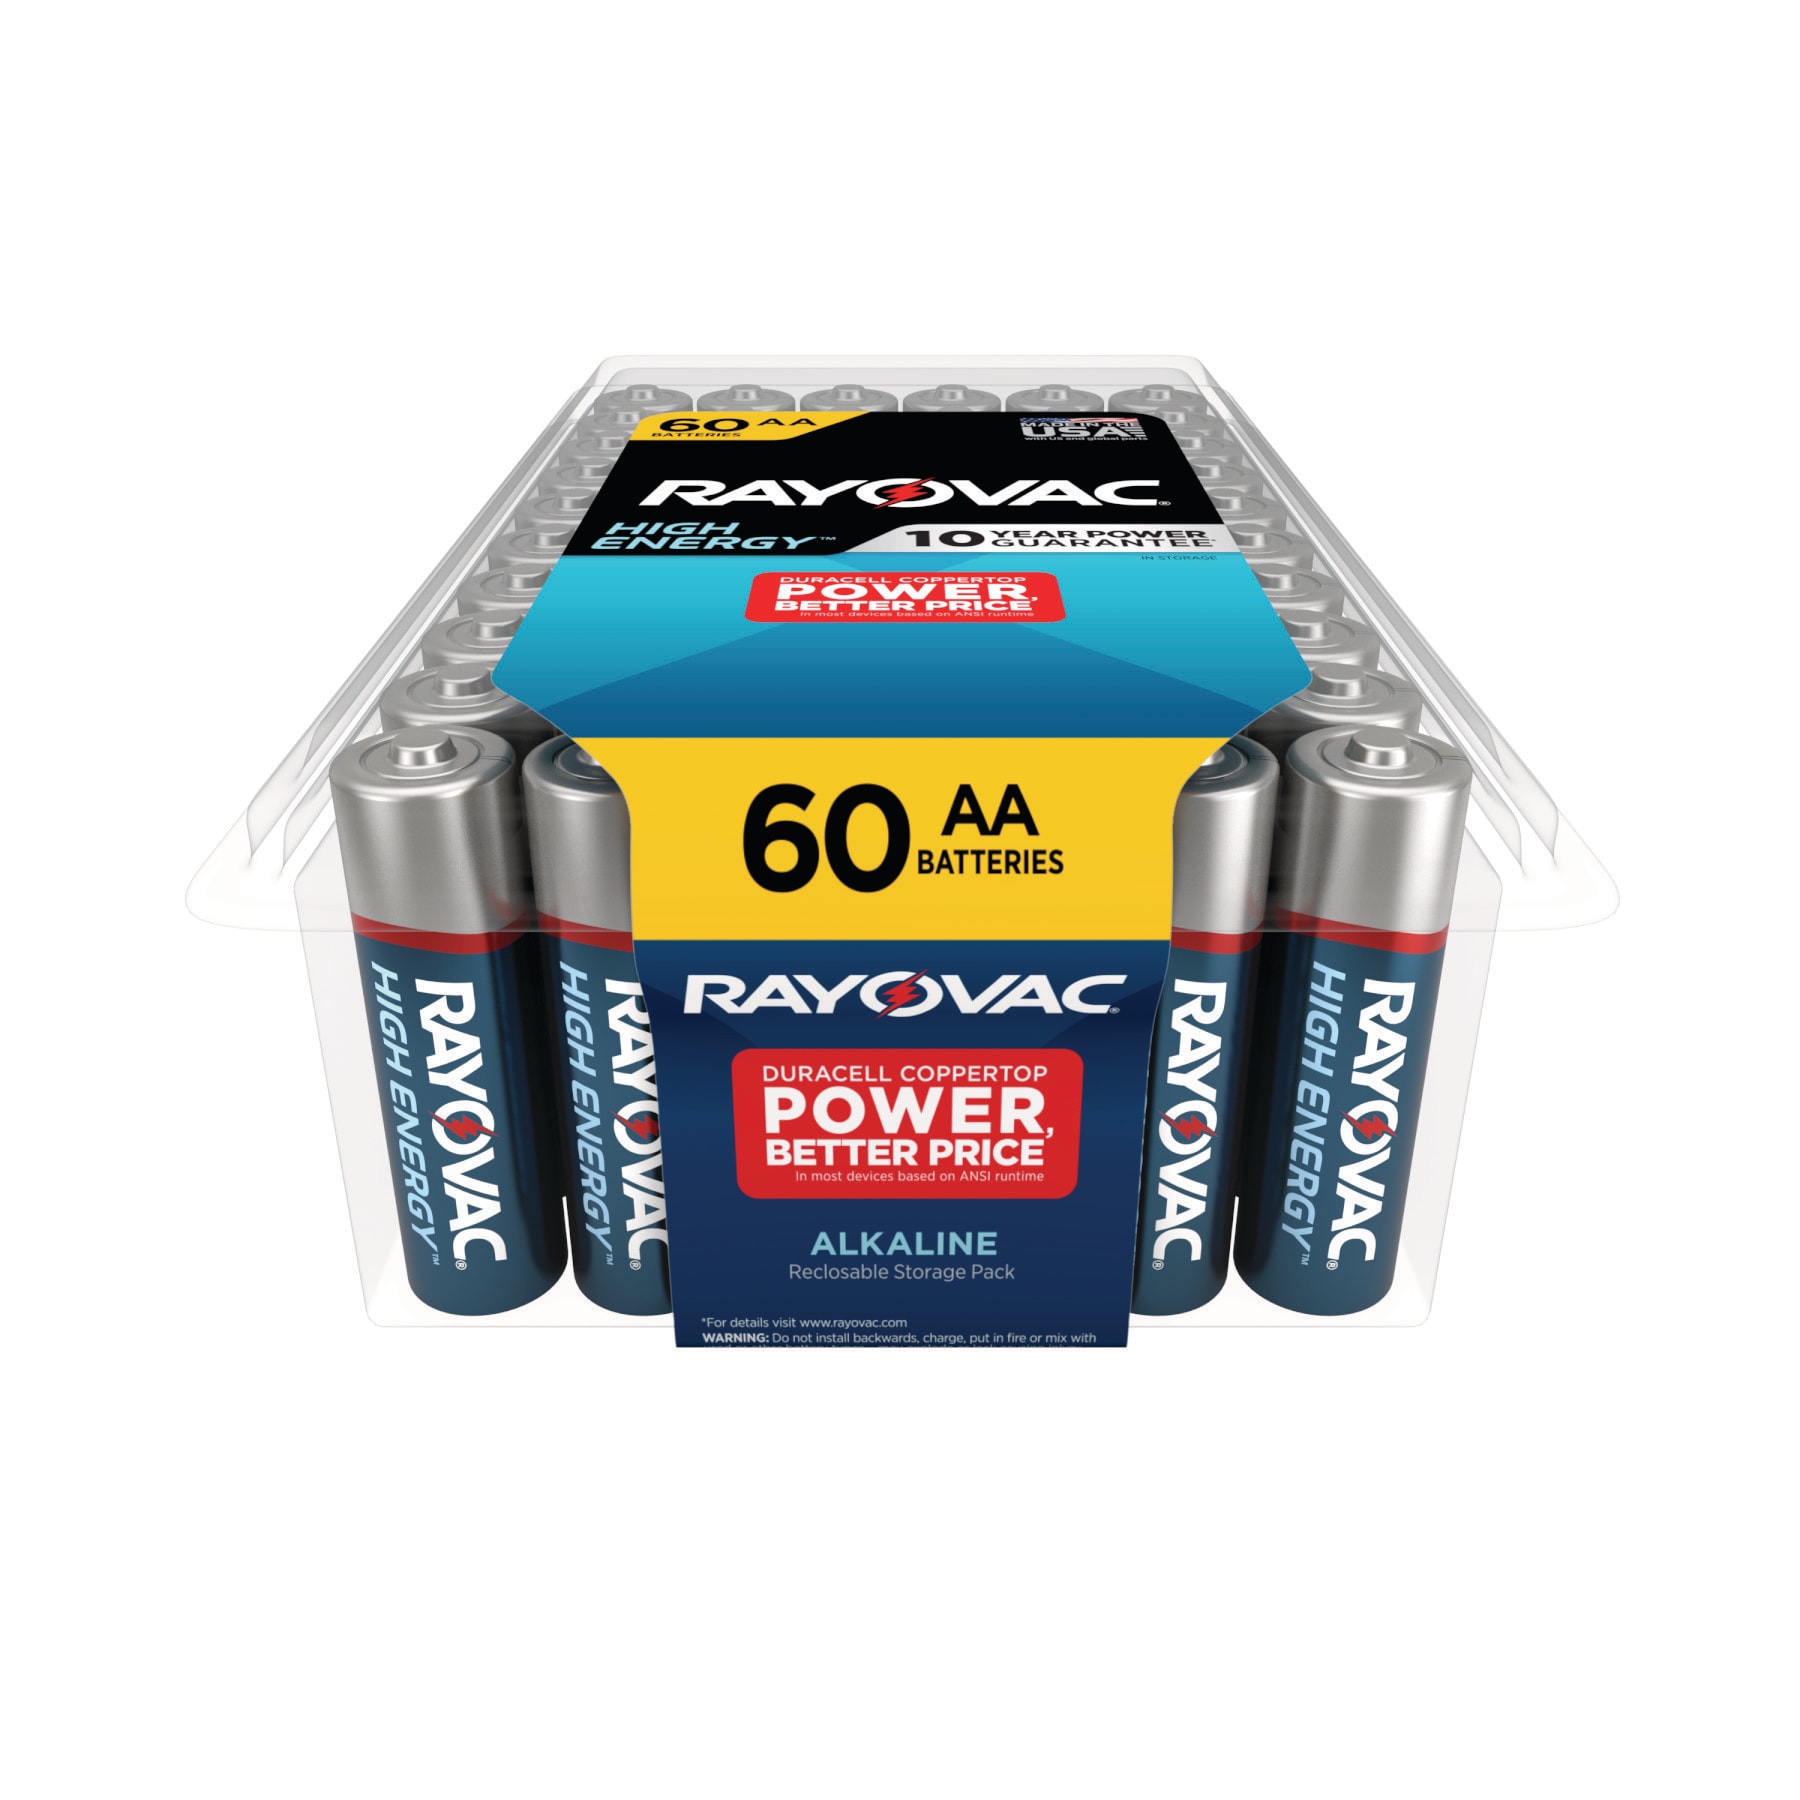 Duracell Coppertop Aa Batteries - 6pk Alkaline Battery : Target